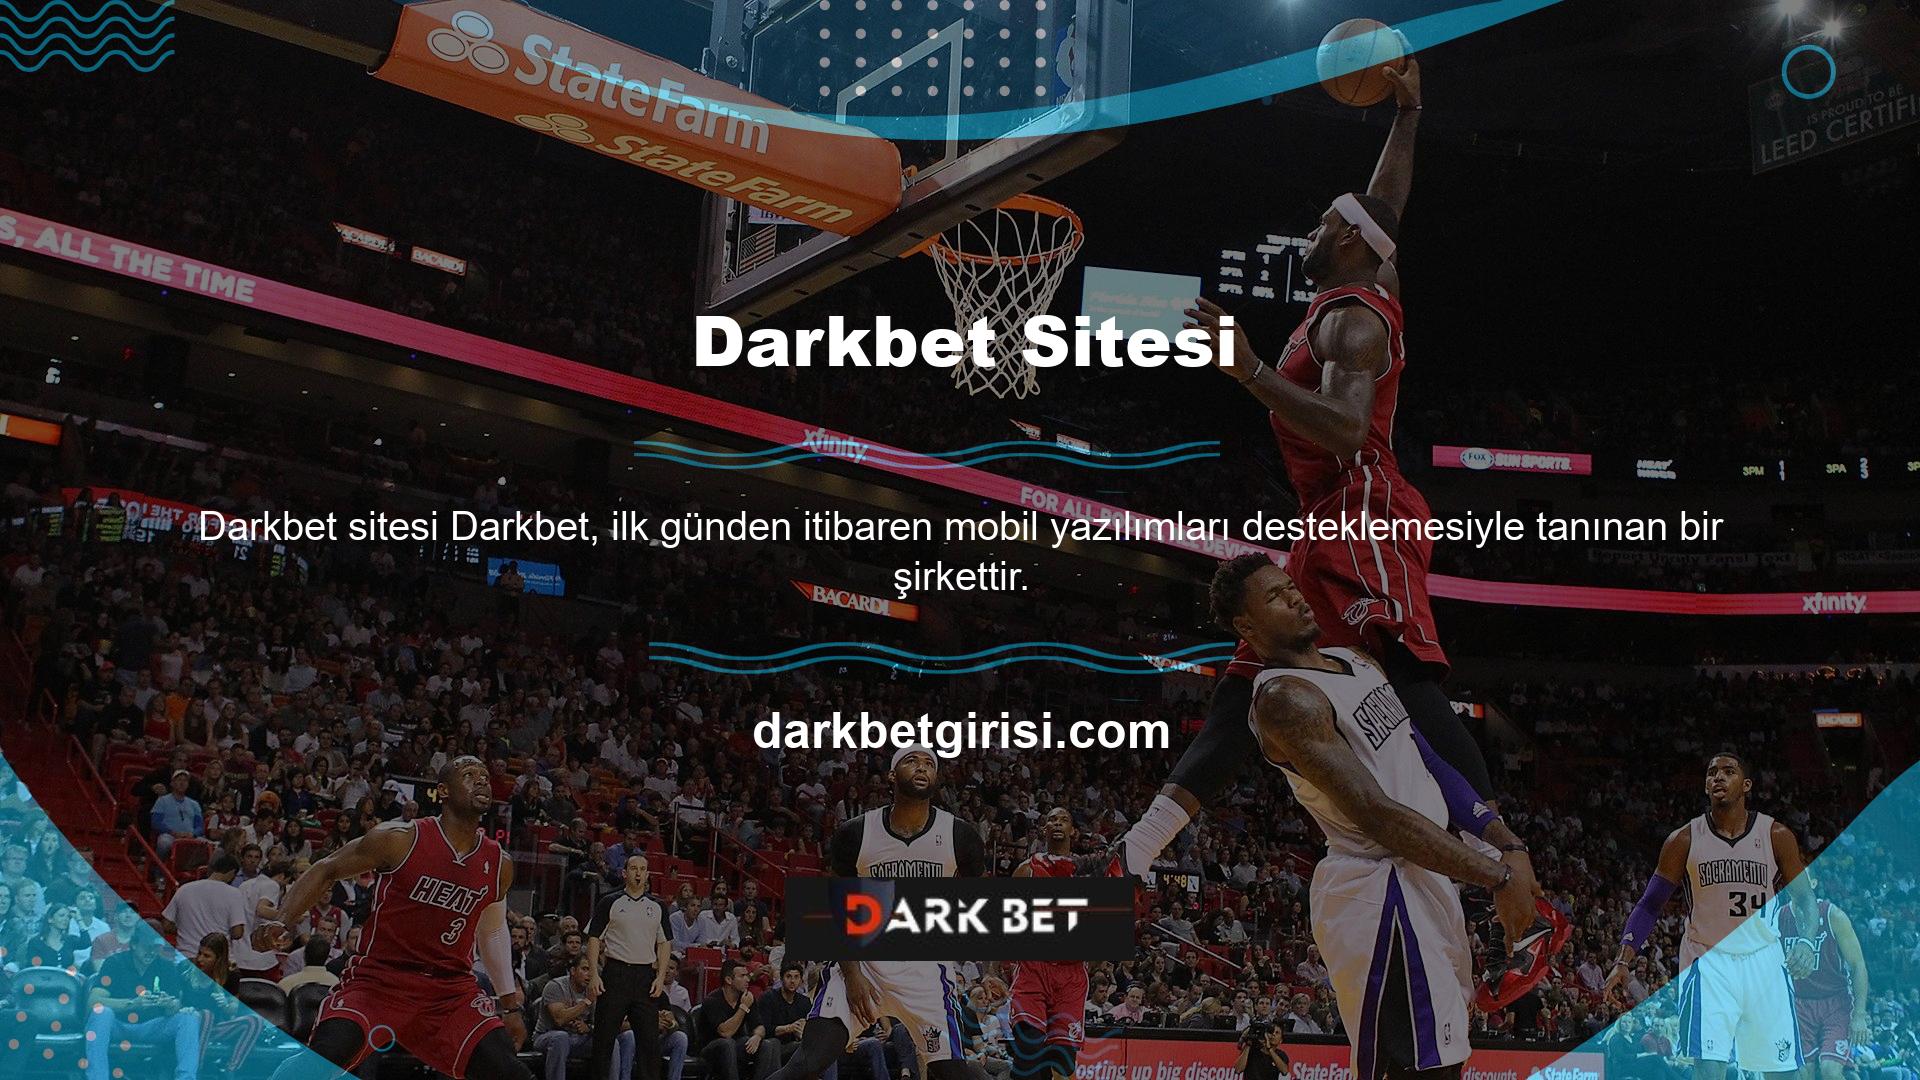 Darkbet mobil web sitesi, masaüstünden farklı kullanıcı arayüzü ile dikkat çekiyor